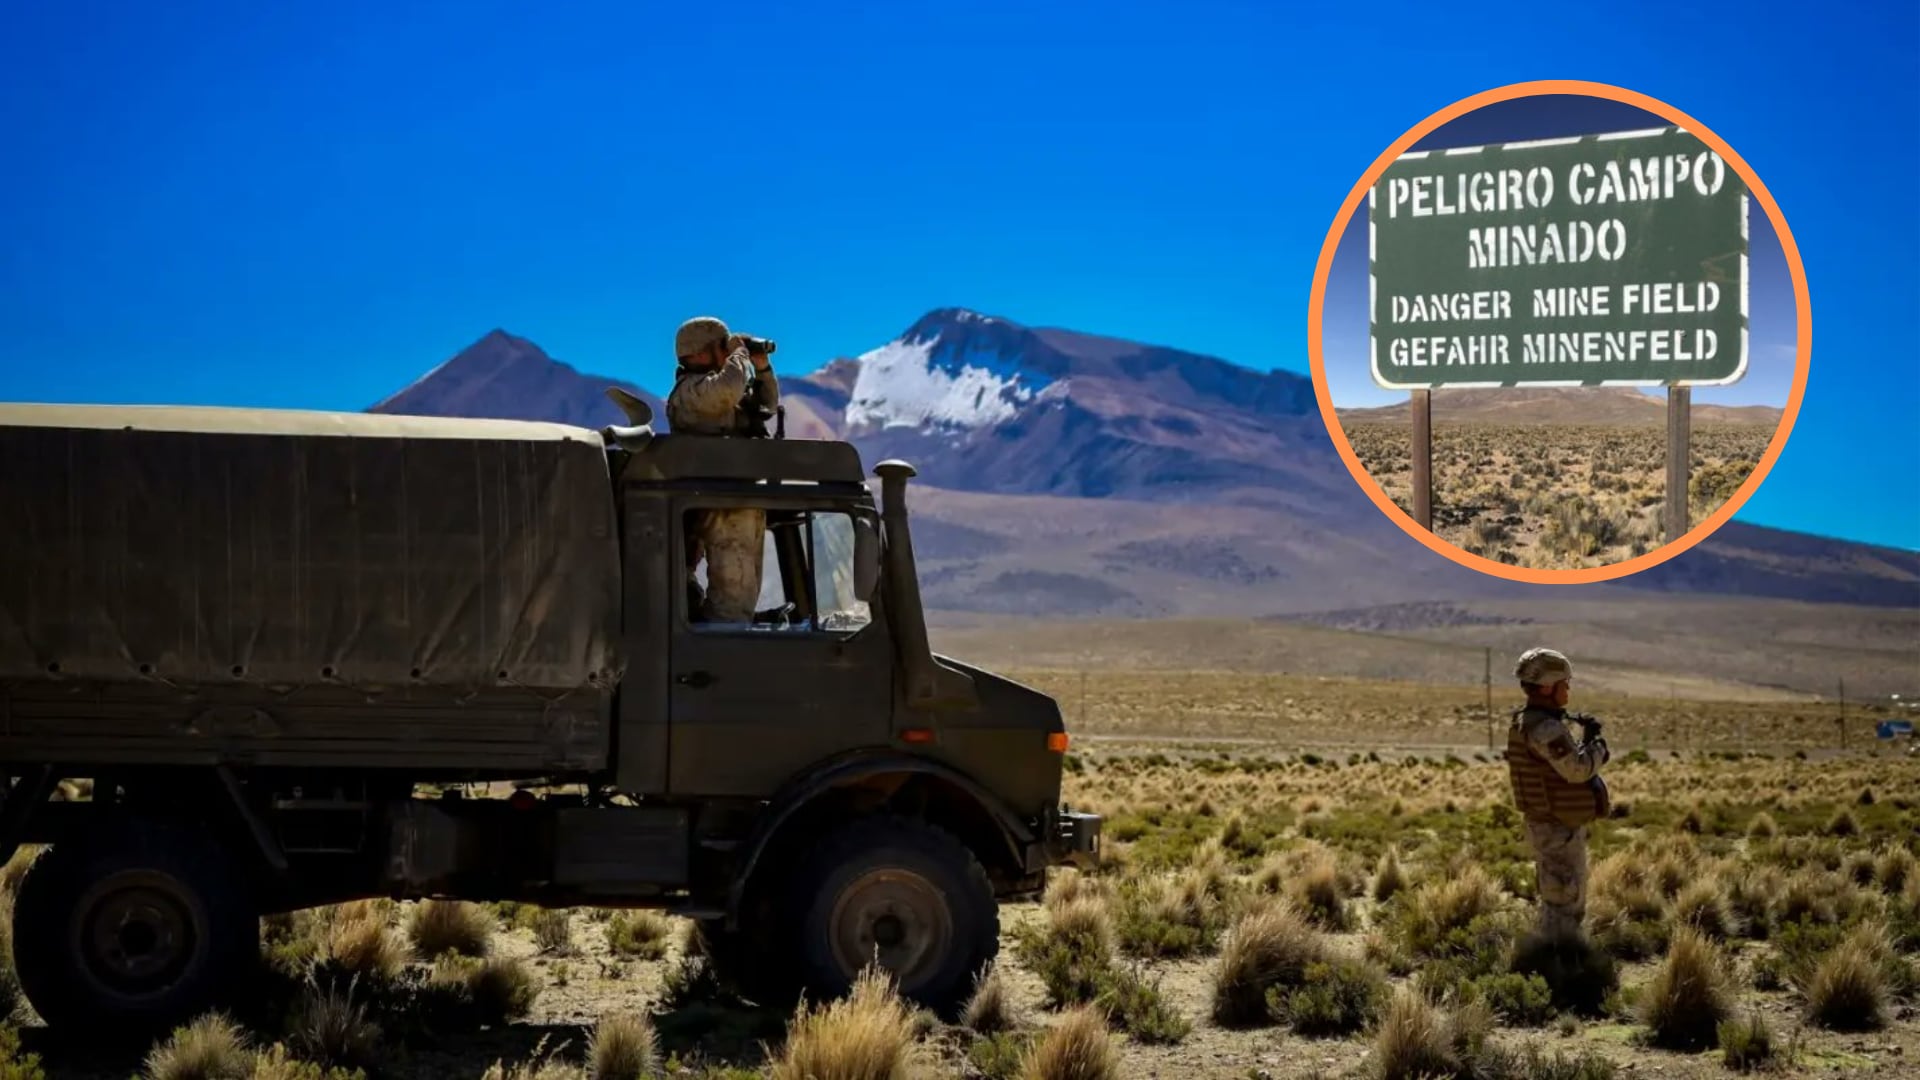 Seis militares chilenos resultan heridos tras explosión de una mina en la frontera con Perú| Foto: Jefatura de Área Fronteriza de Arica y Parinacota/Angelo Attanasio